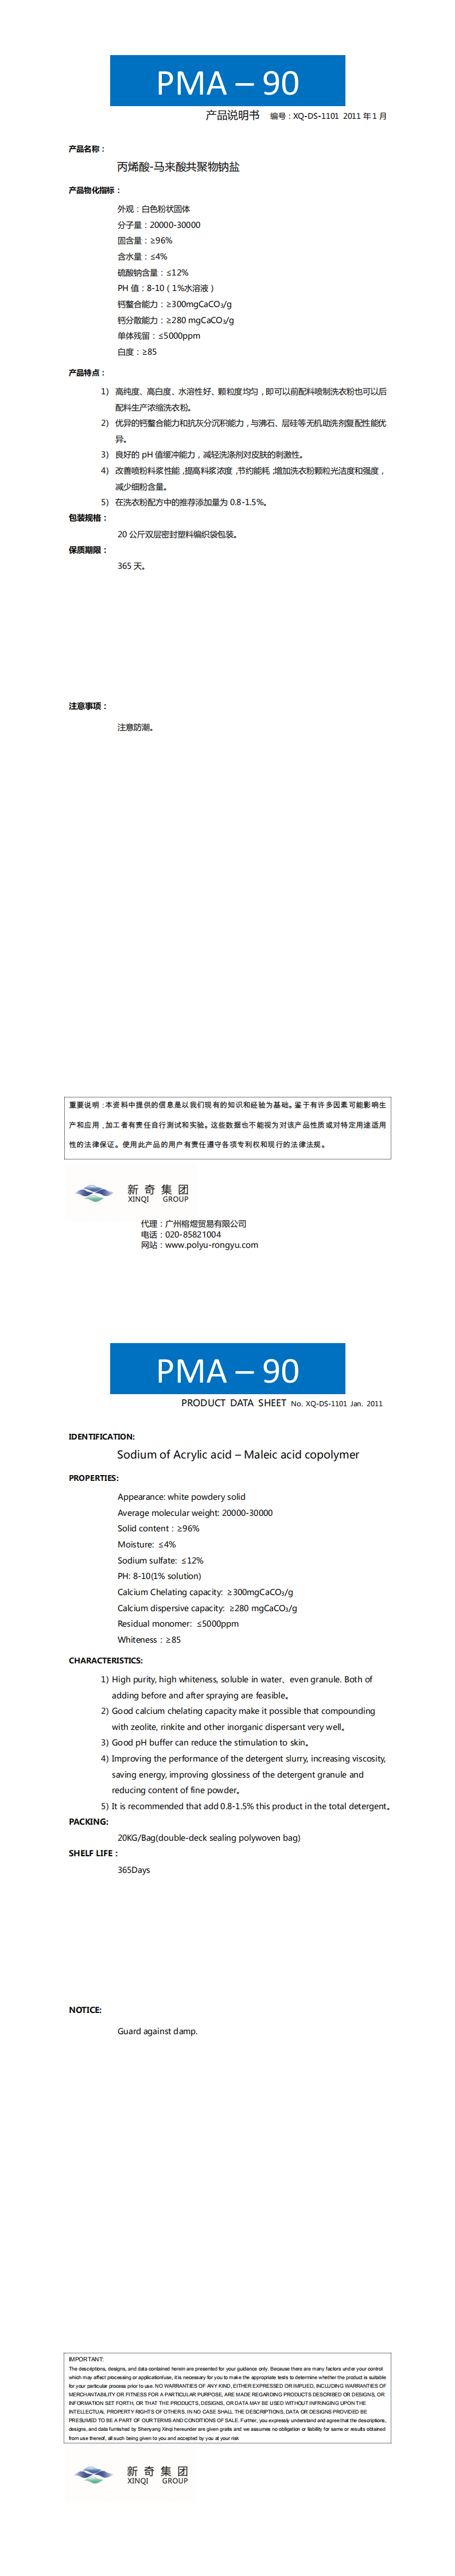 PMA-90_0.png